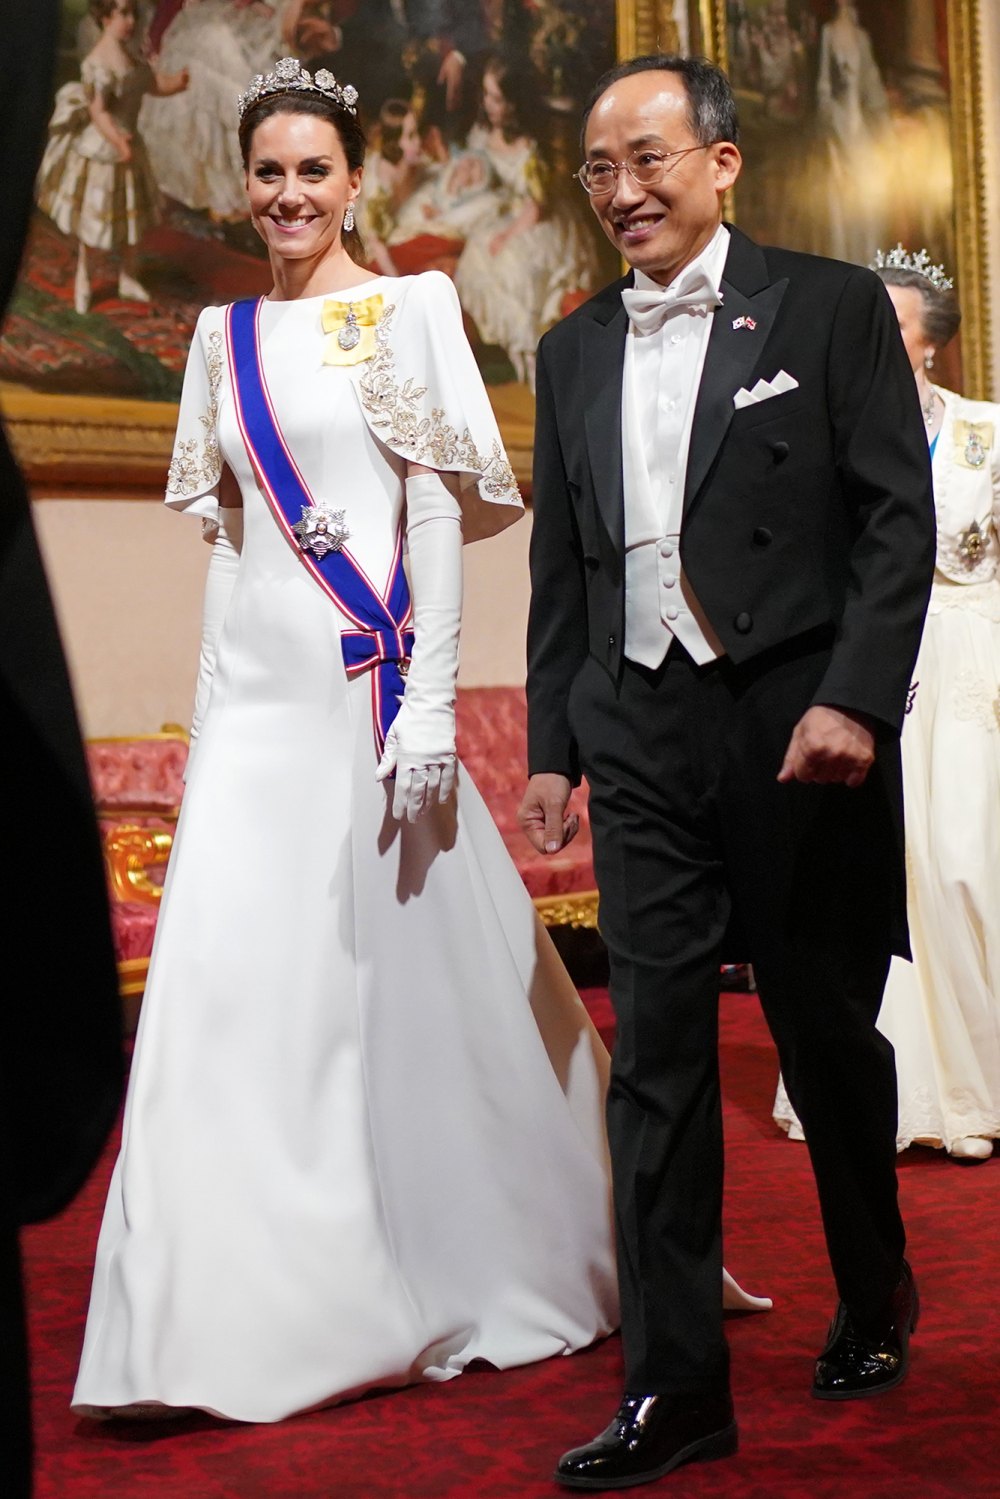 Princess Kate Middleton Wears Rare Strathmore Rose Tiara